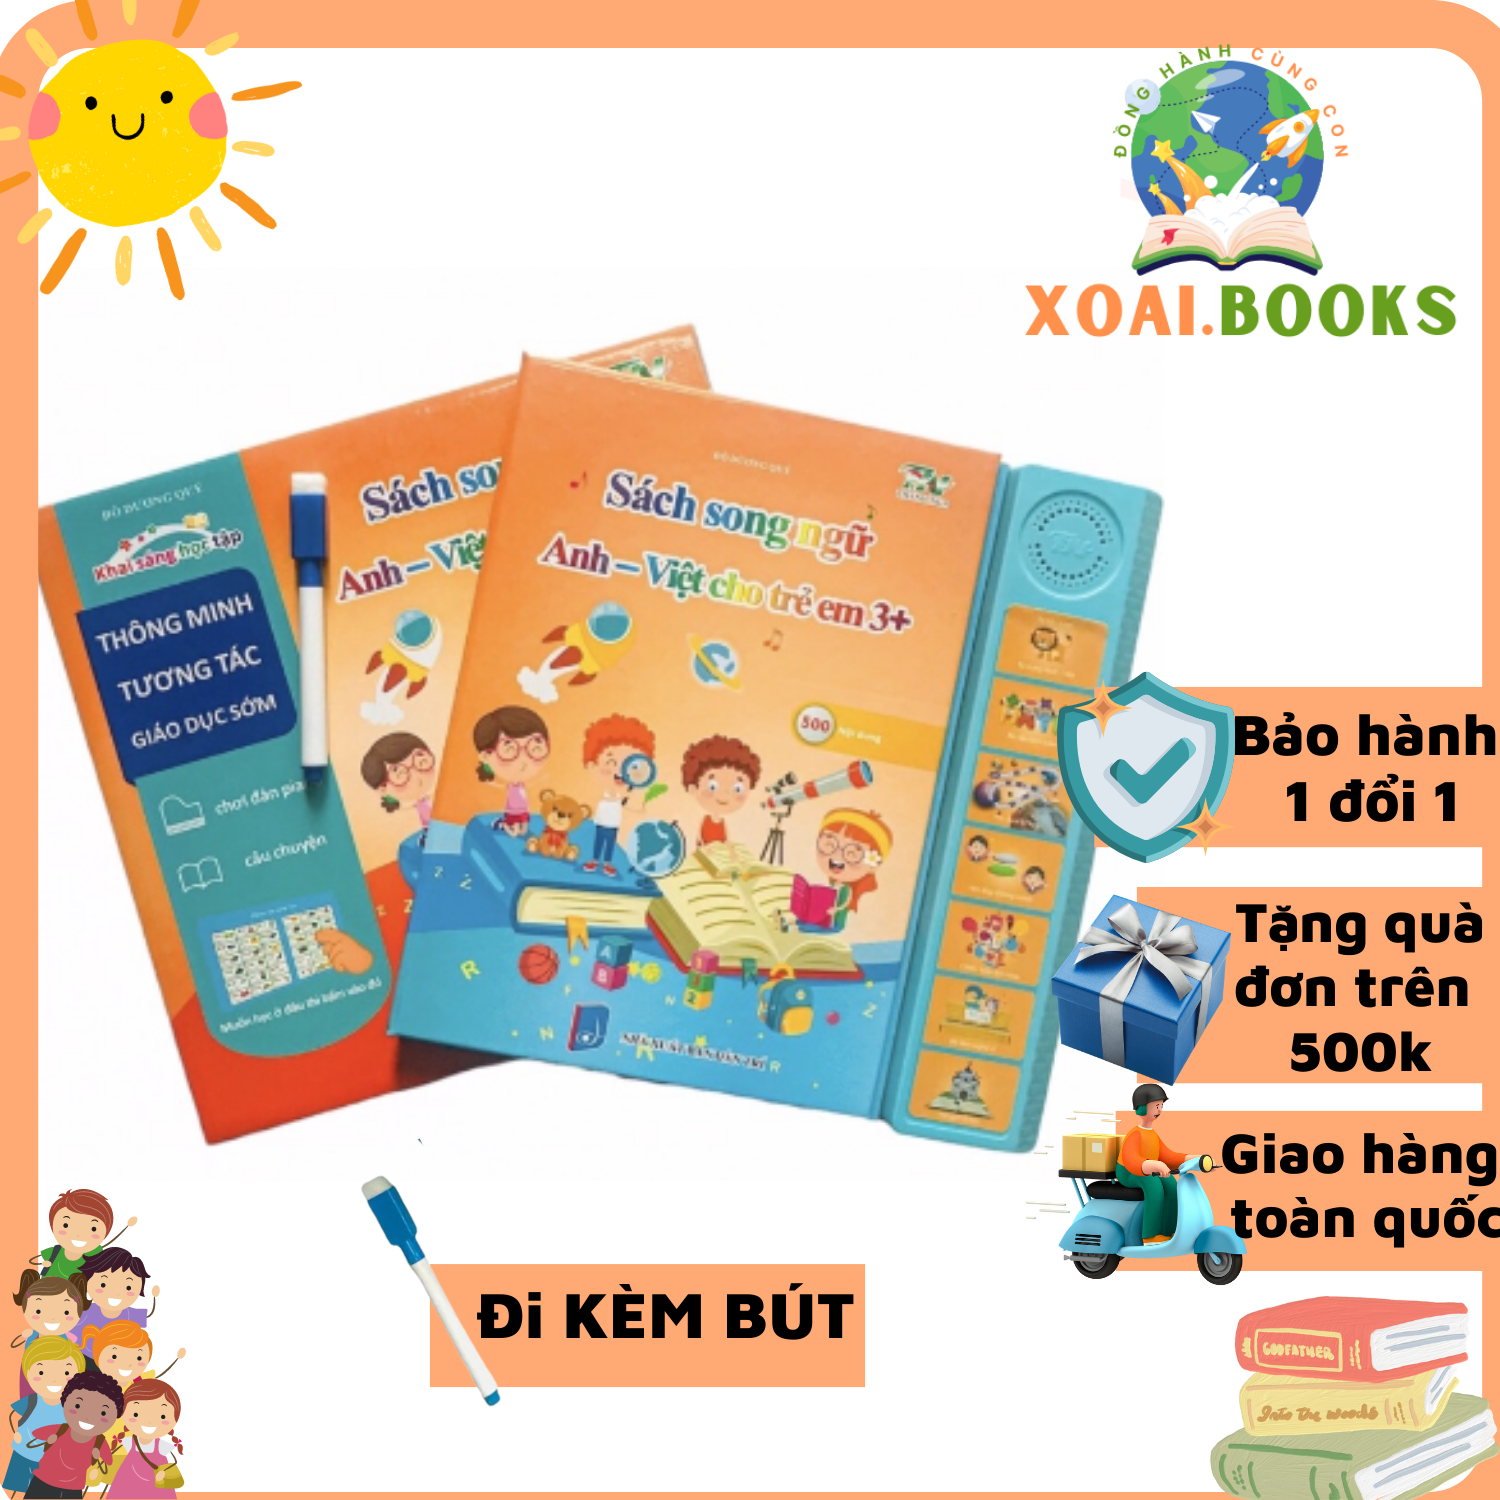 [2 phiên bản] Sách nói Điện tử Song ngữ Anh – Việt cho trẻ em 1+, 3+, Sách điện tử đa chức năng giáo dục sớm